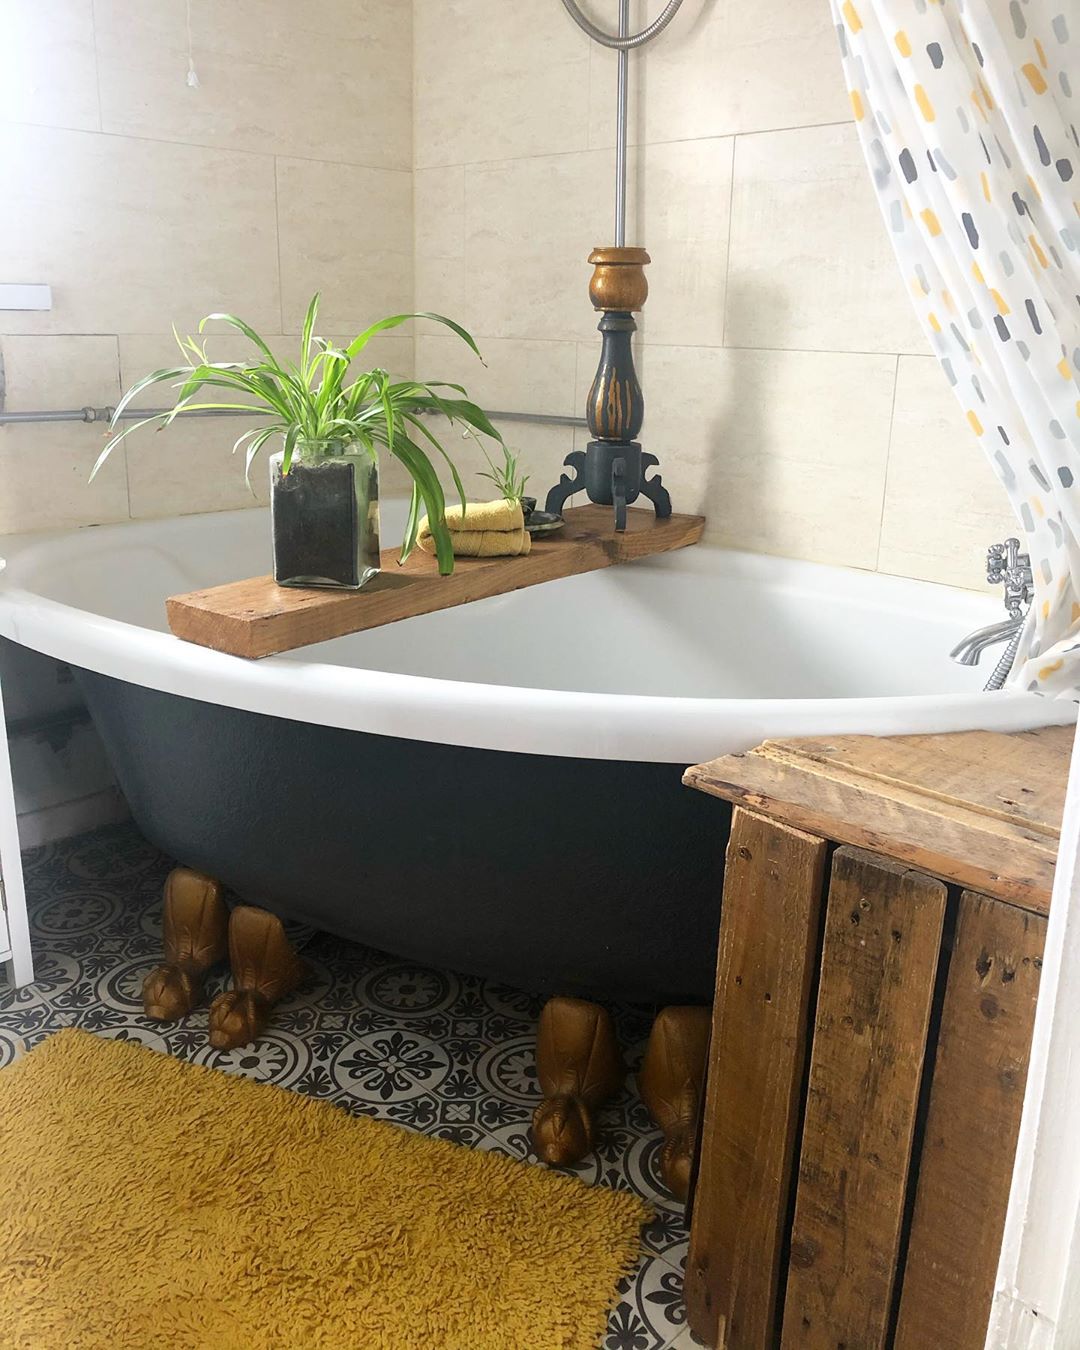 Baño rústico: 60 ideas que aportan sencillez y encanto a tu hogar